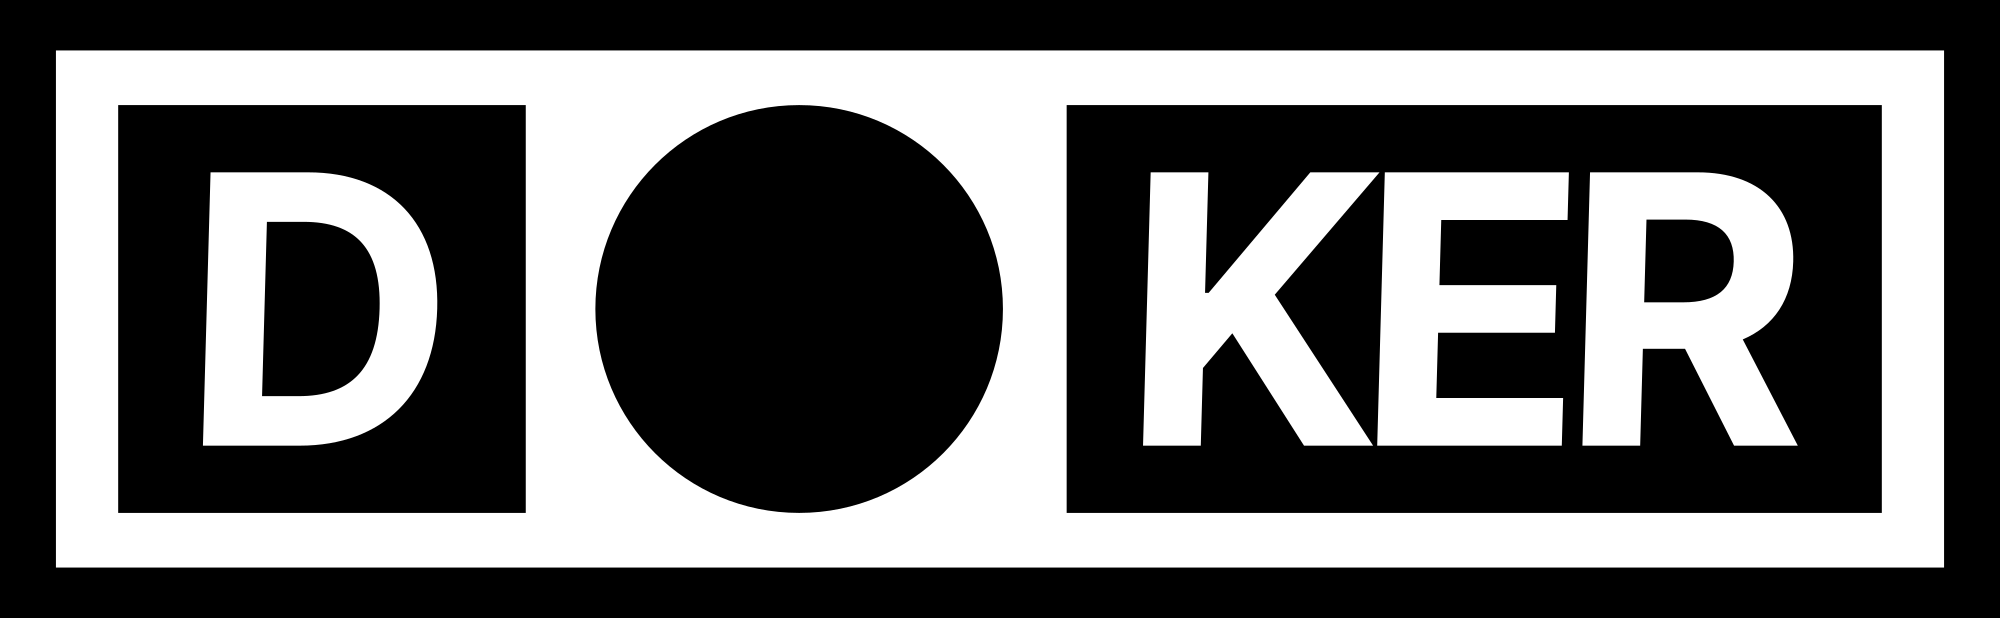 Doker logo